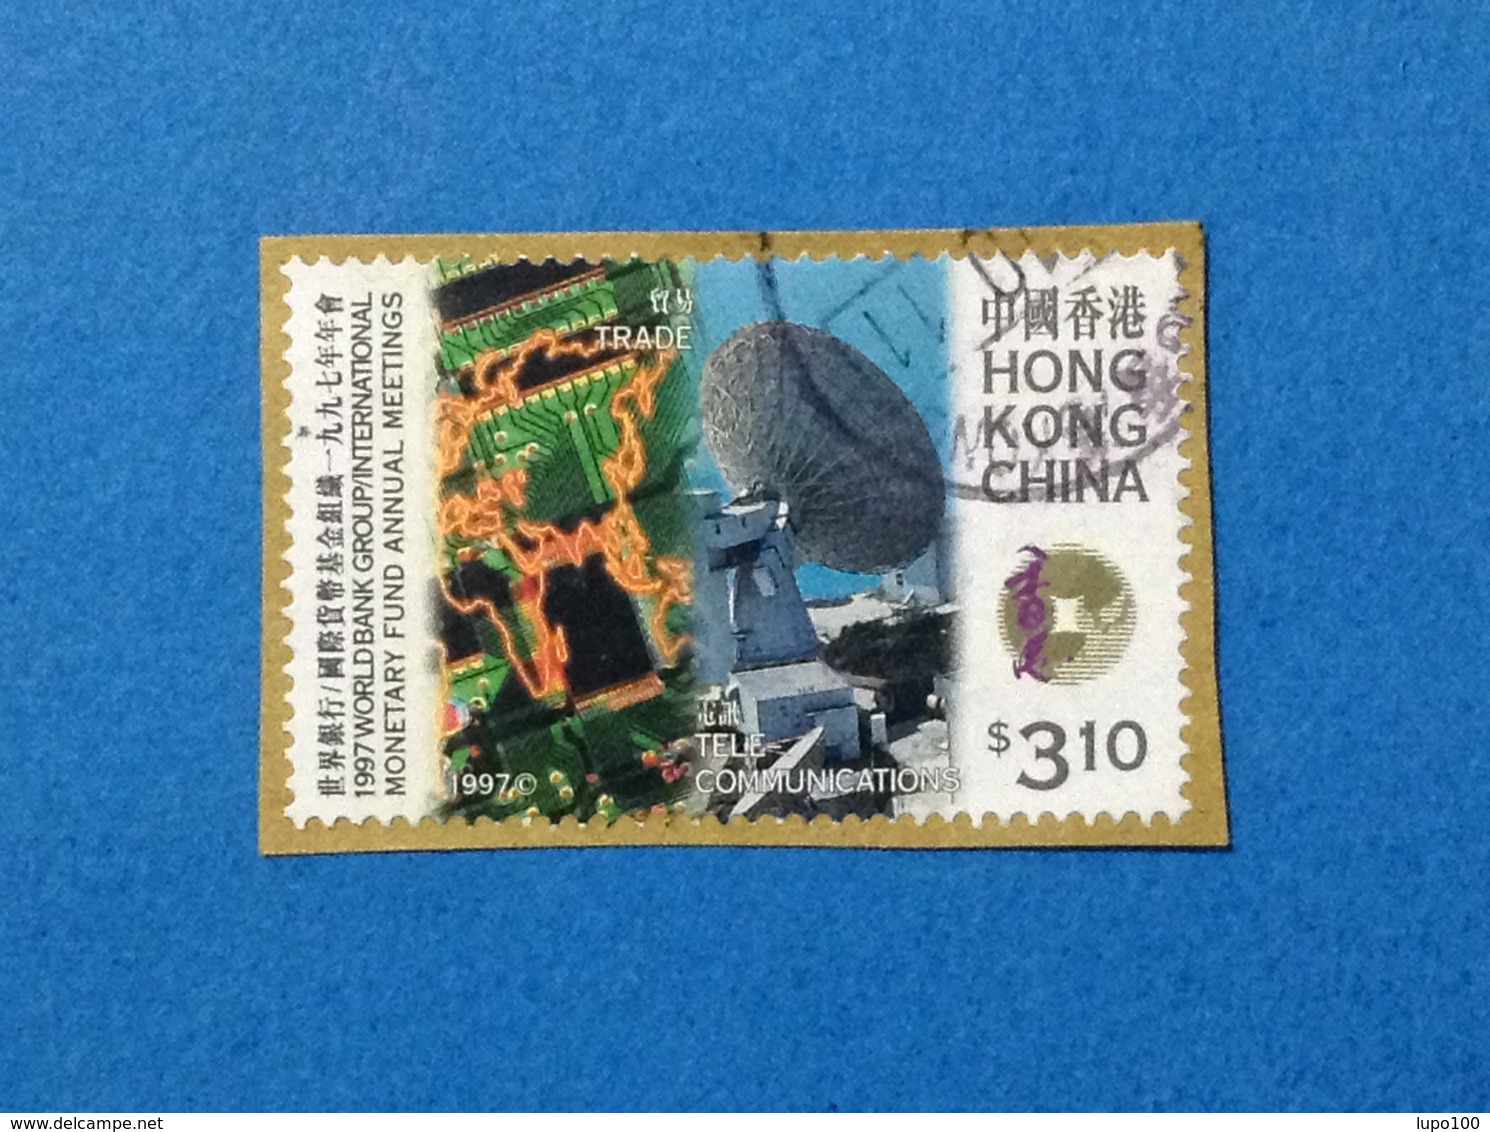 1997 HONG KONG CHINA FRANCOBOLLO USATO STAMP USED TRADE TELECOMUNICATIONS $ 3.10 - Usados